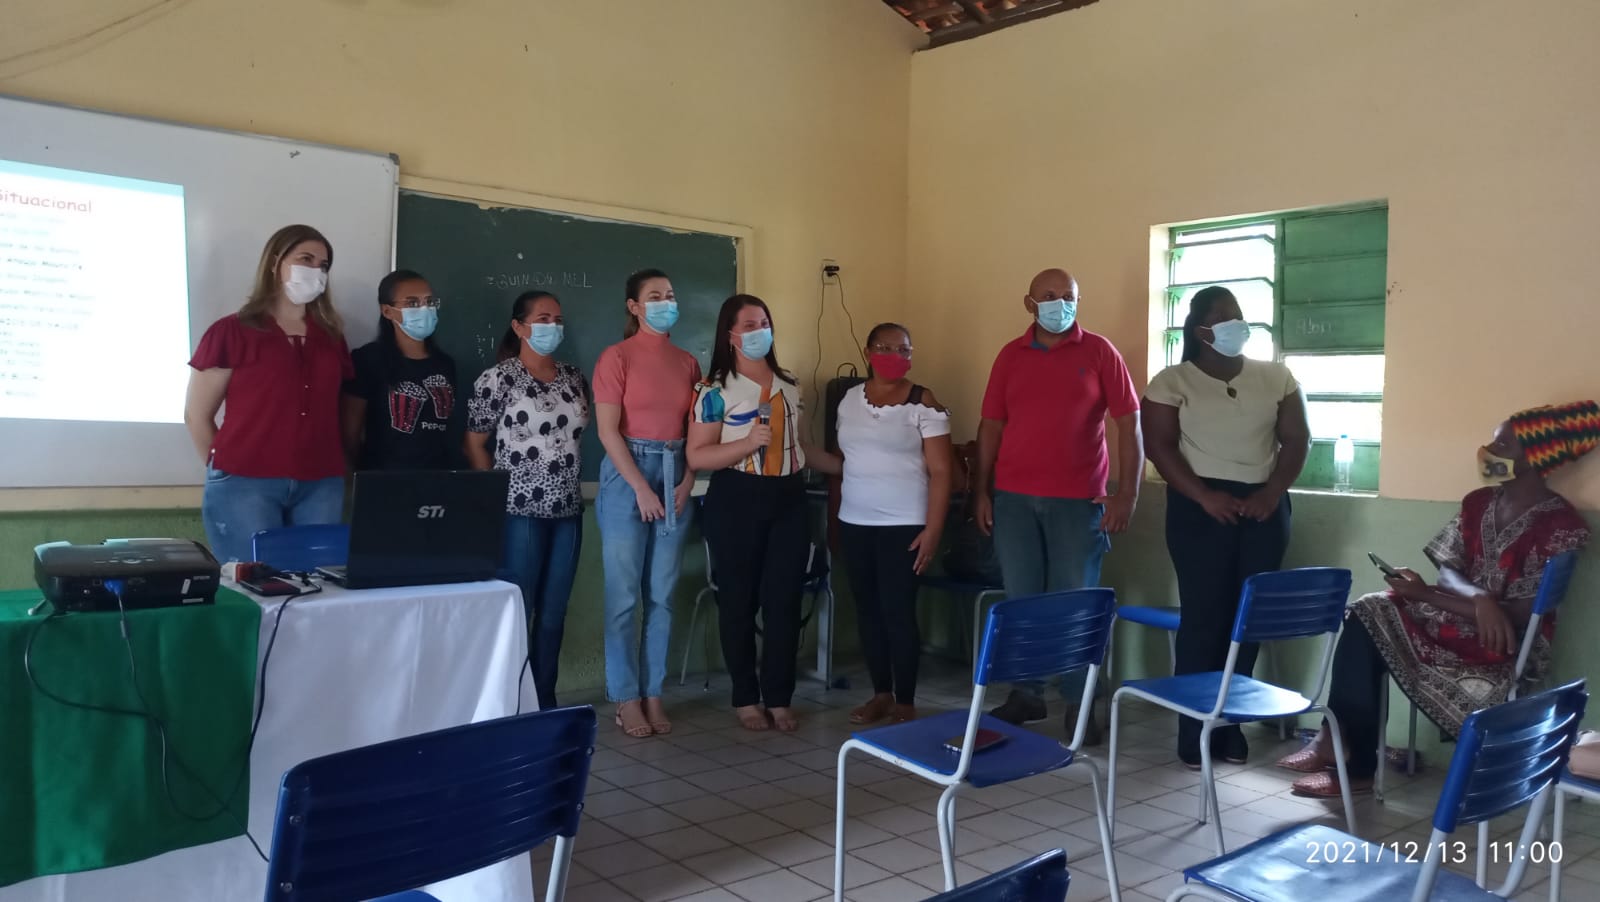 SMS de Campinas do Piauí realiza pré-conferência na zona rural do município - Imagem 6